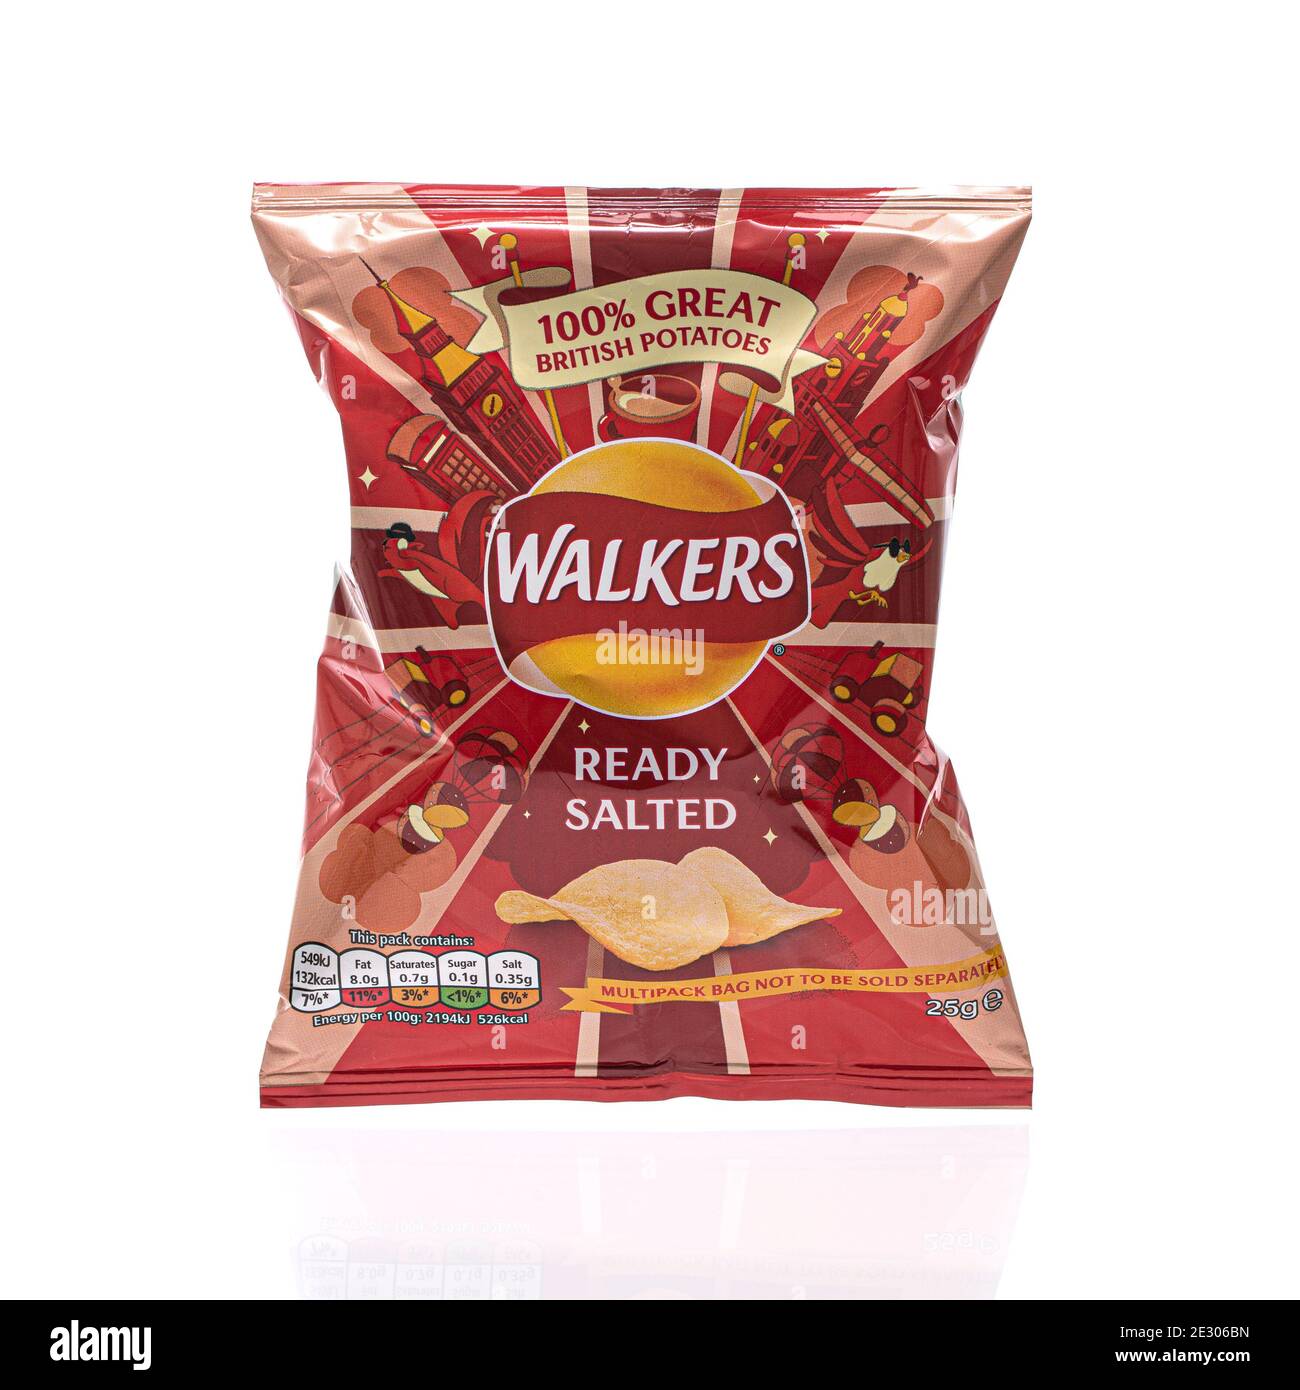 SWINDON, Großbritannien - 15. JANUAR 2021: Packung Walkers Ready Salted Crisps 100% große britische Kartoffeln auf weißem Hintergrund Stockfoto